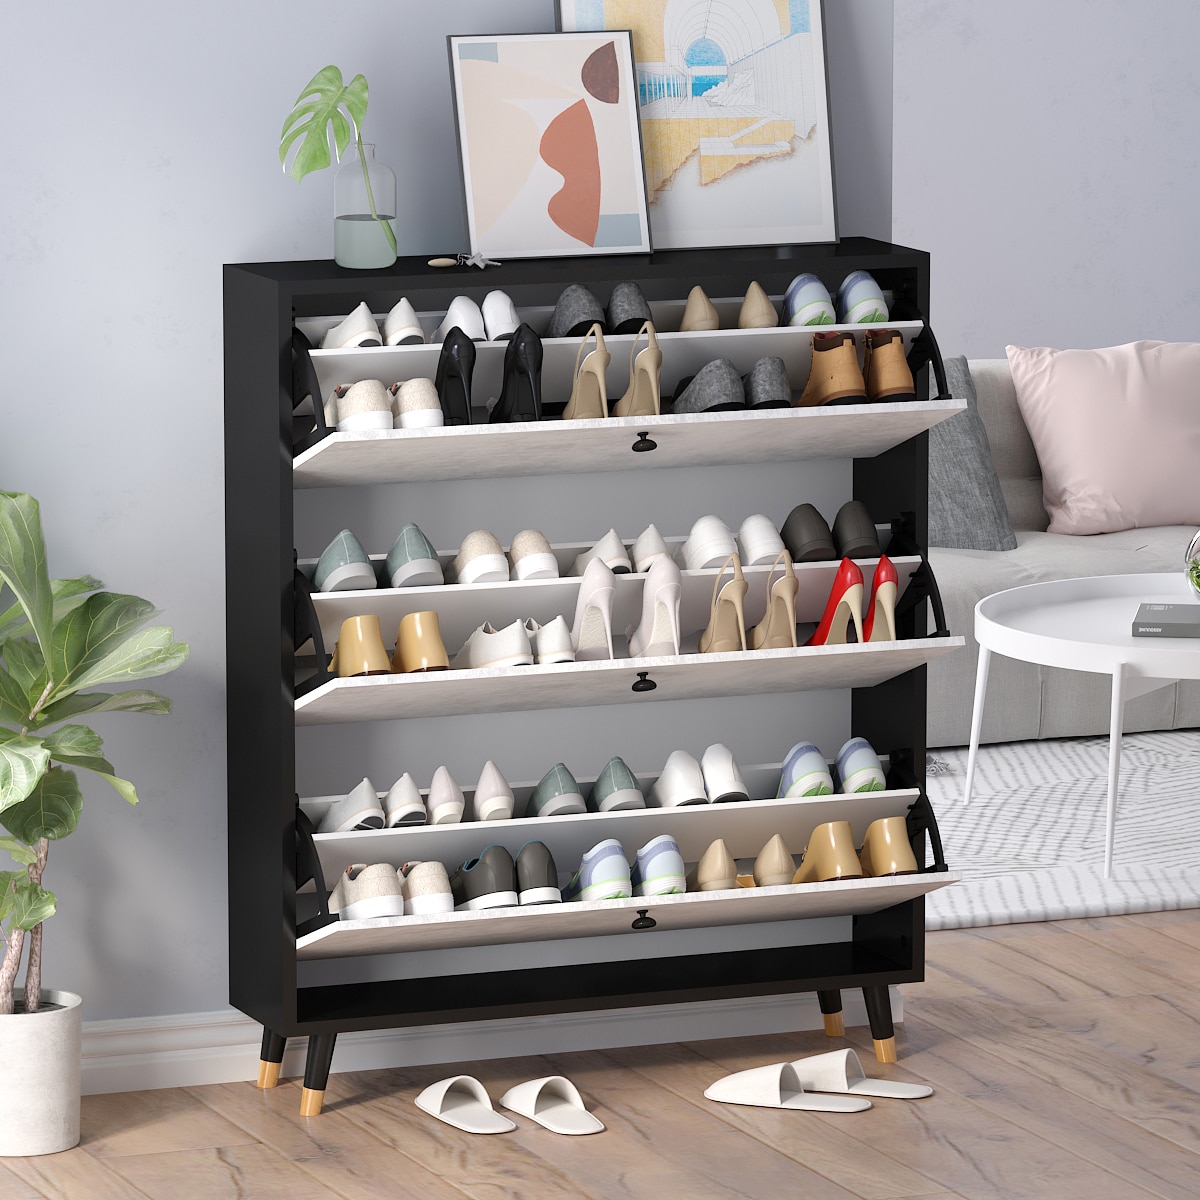 Designer Shoe Rack Furniture - Wide Range and Quality